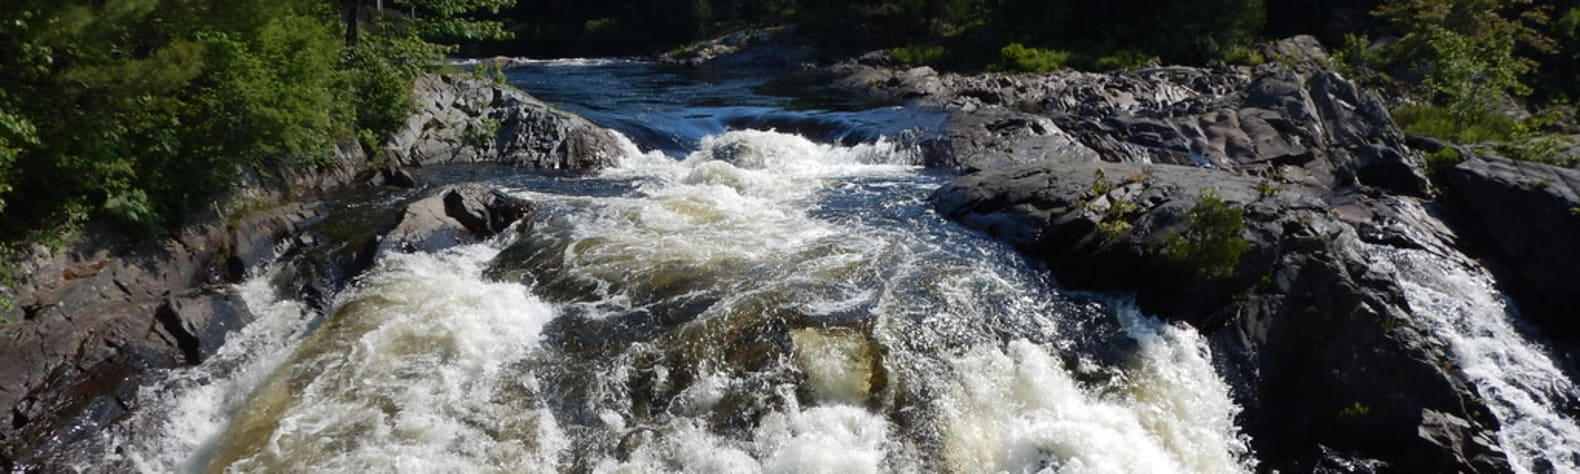 River Aux Sables Provincial Park